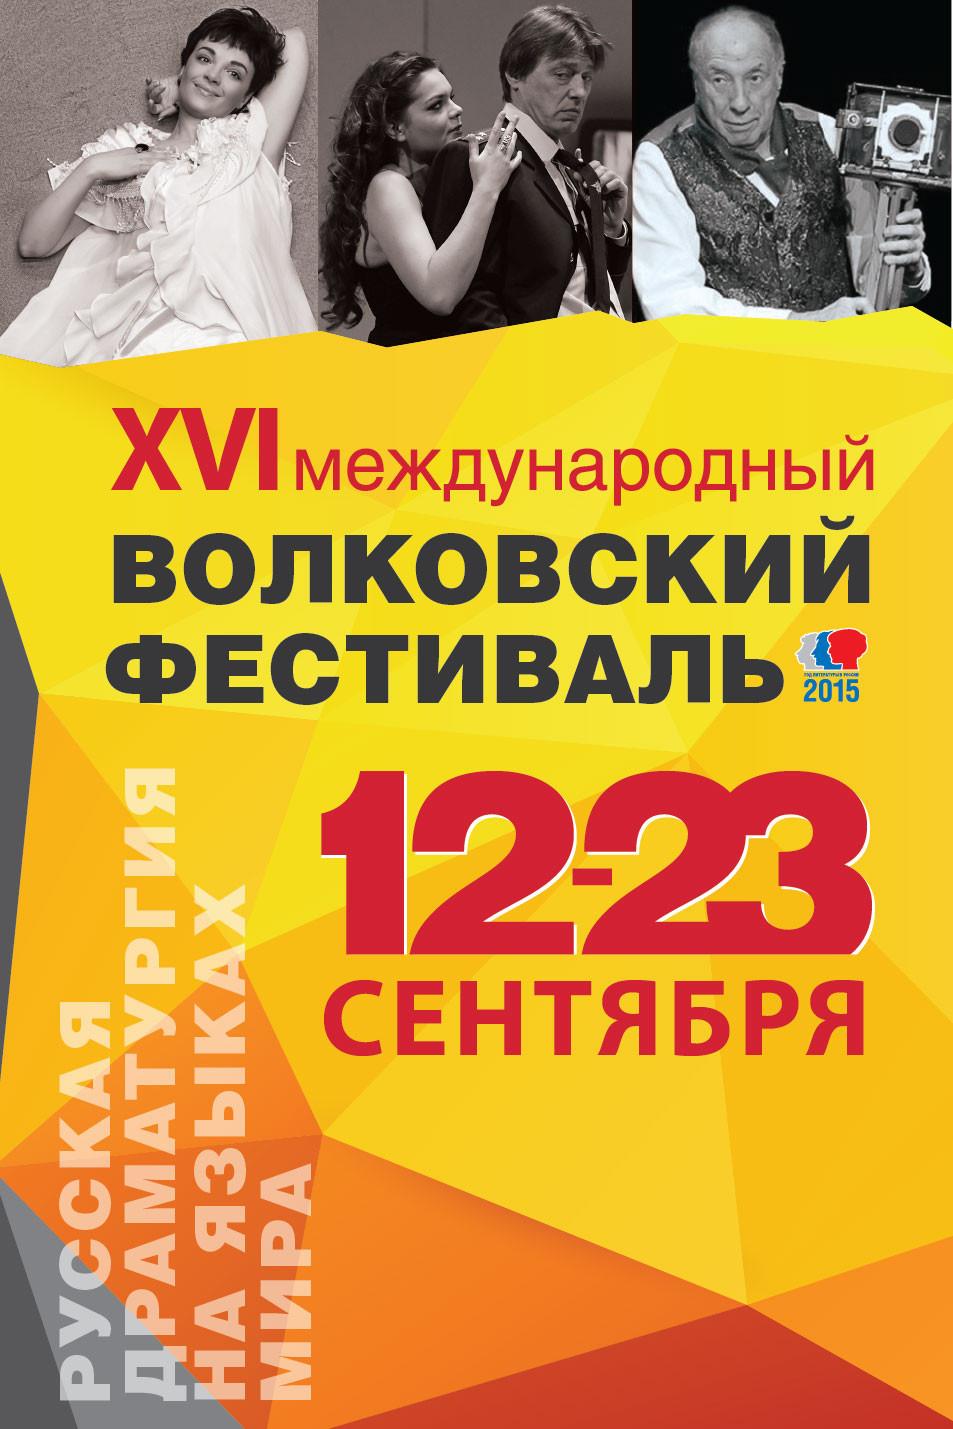 В Ярославле начался Международный Волковский фестиваль